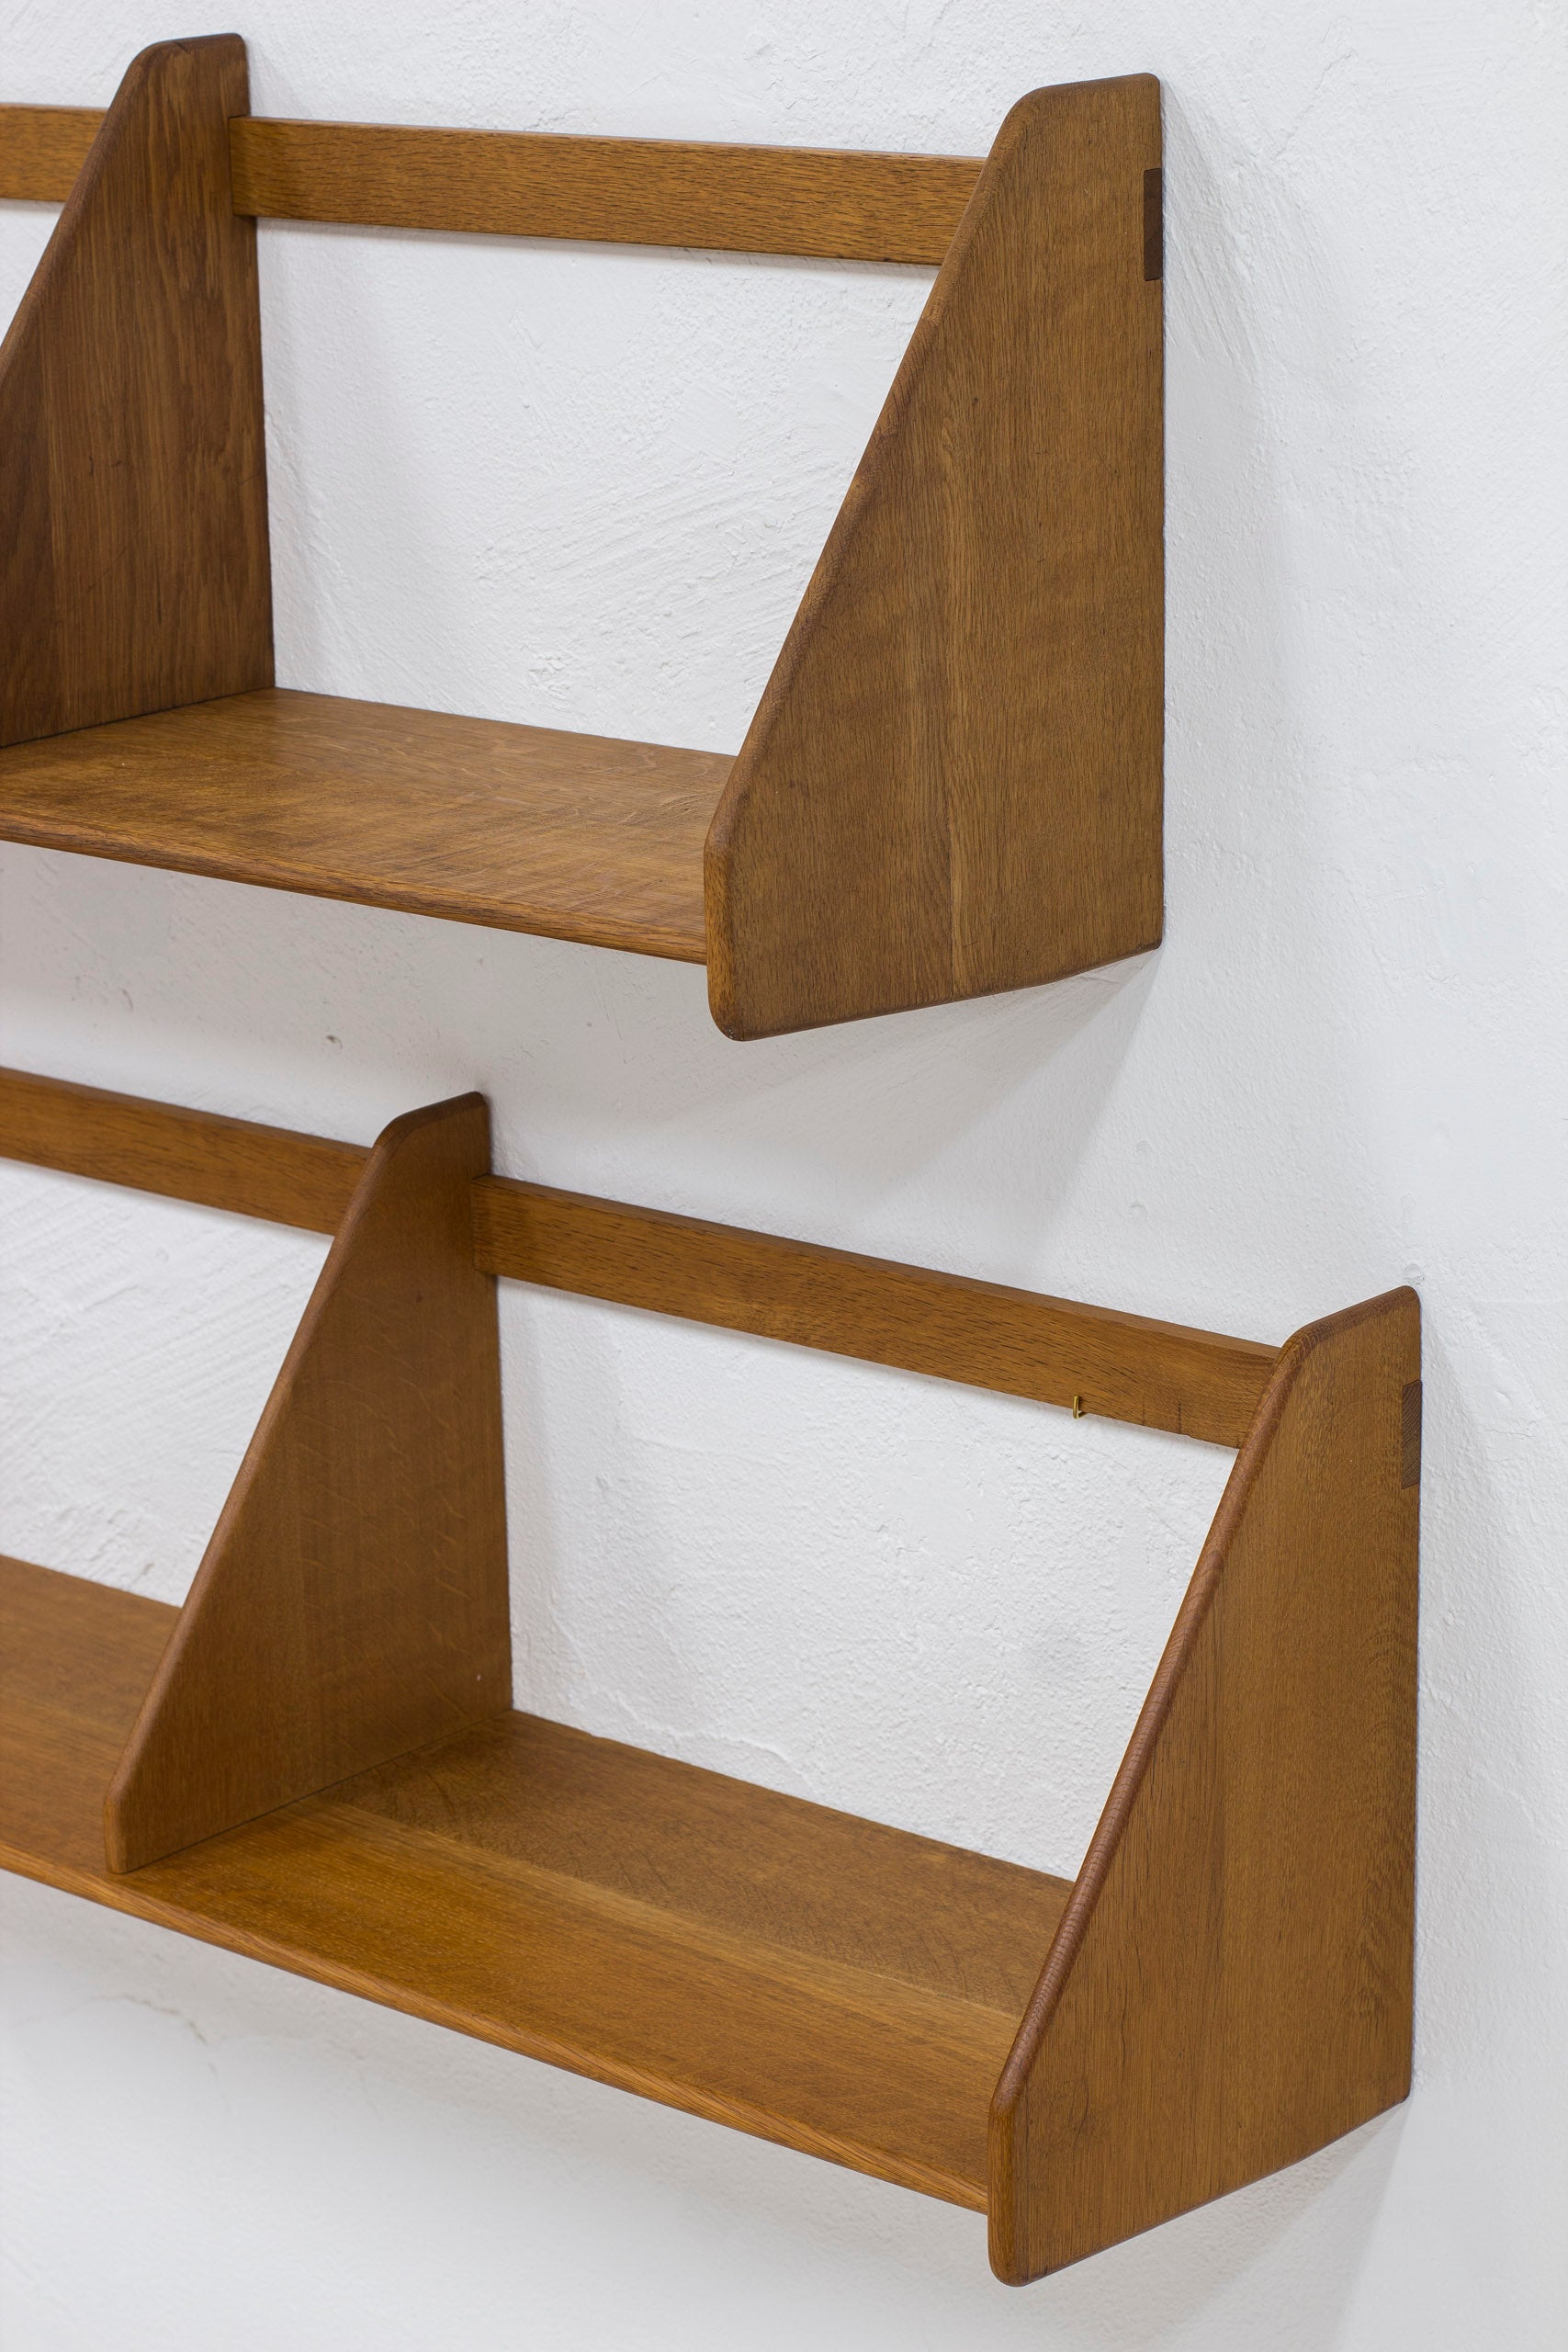 Large shelves "RY21" by Hans J. Wegner